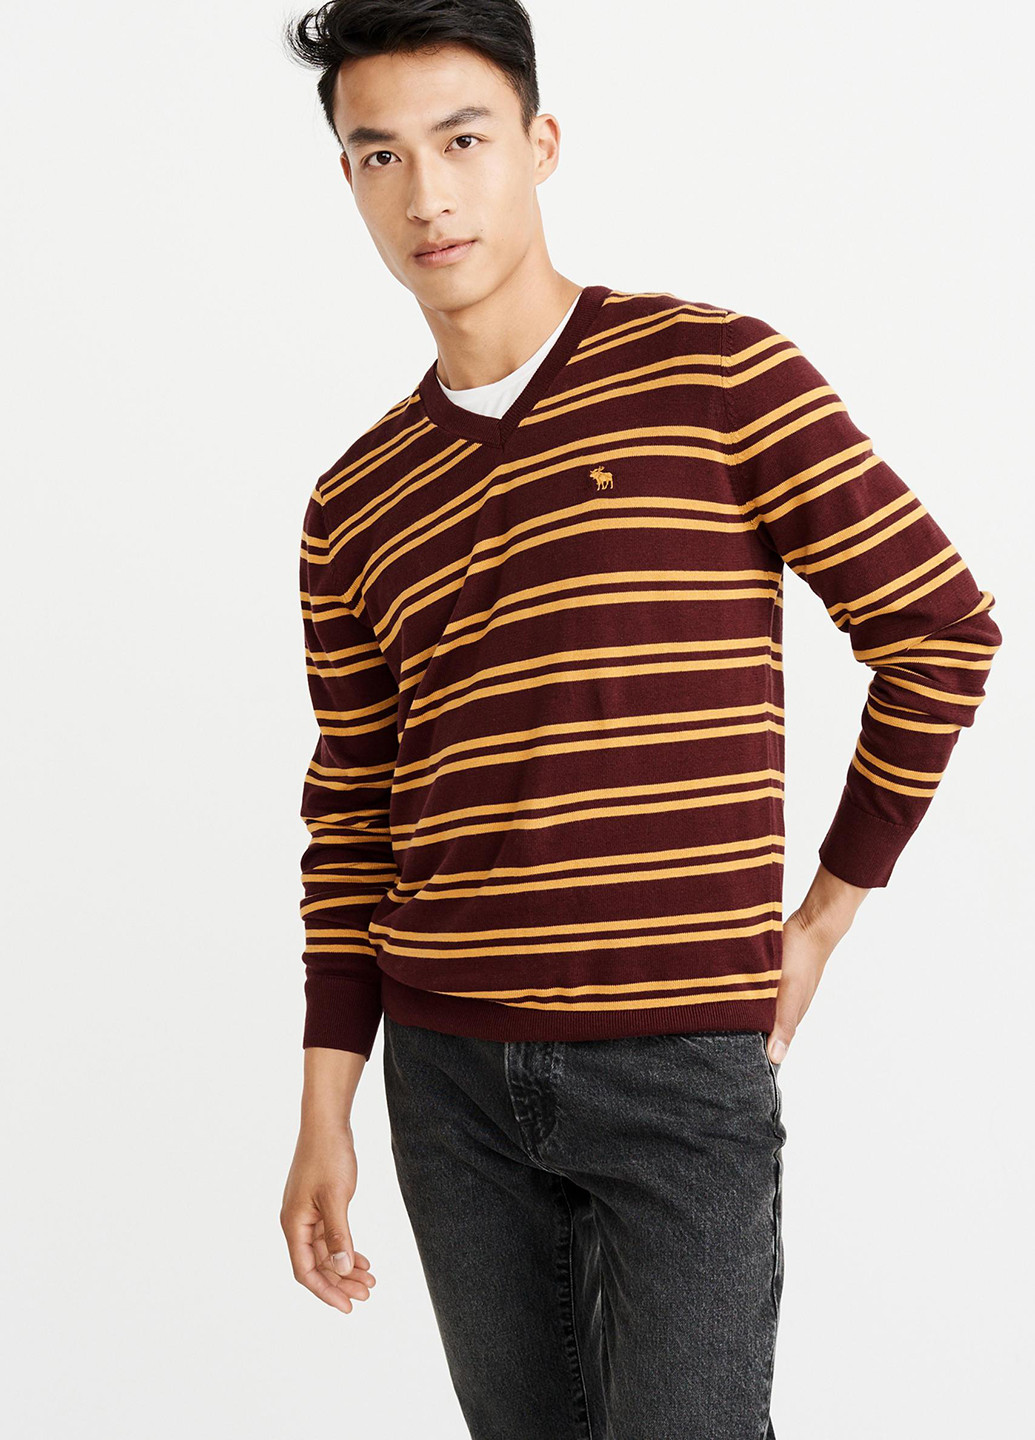 Бордовый демисезонный пуловер пуловер Abercrombie & Fitch